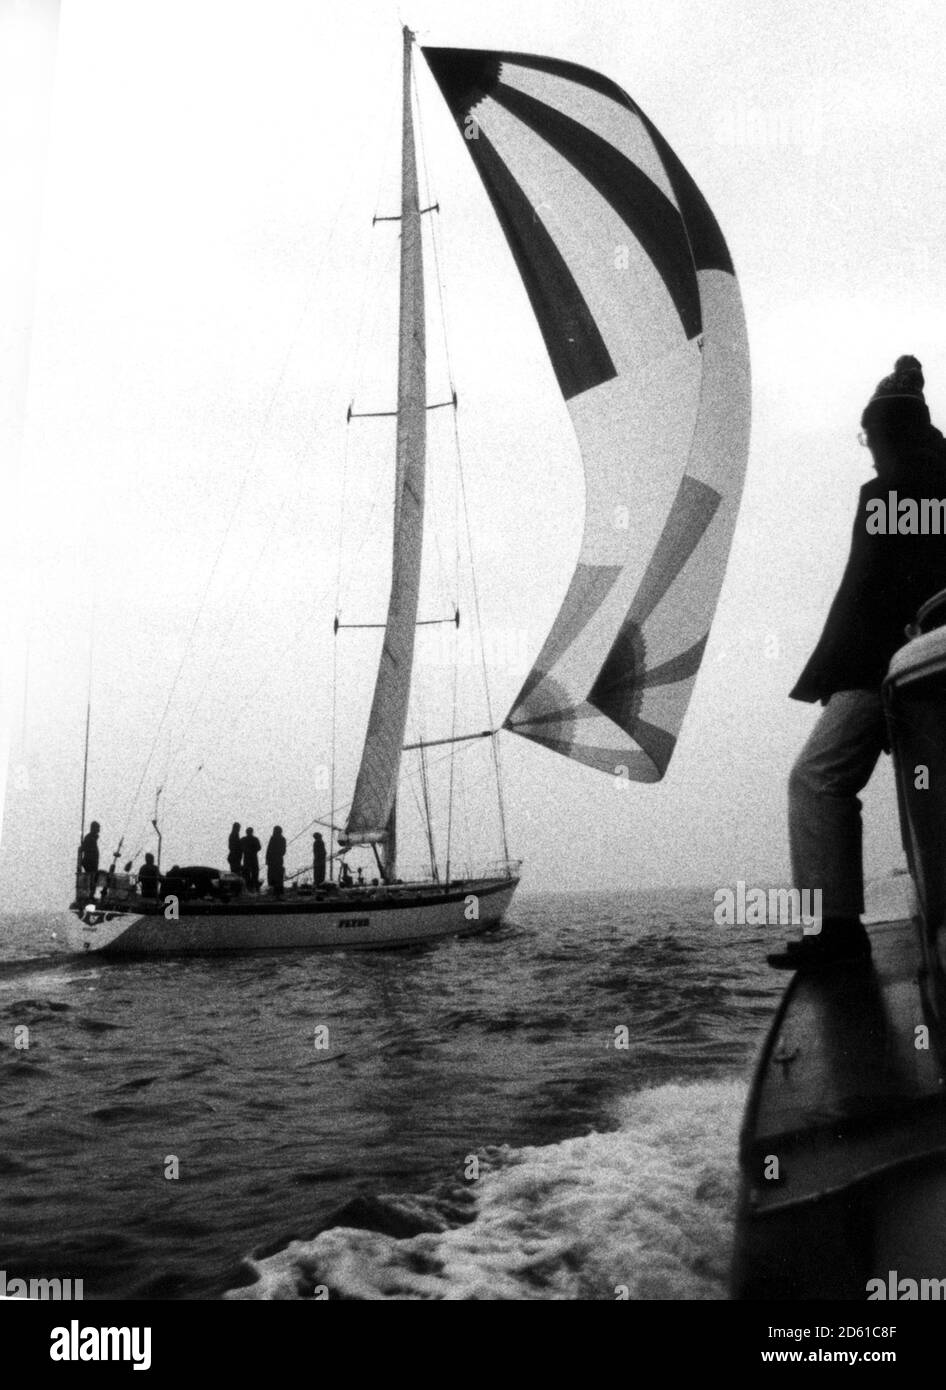 FLYER SI AVVICINA ALLA LINEA DI ARRIVO A PORTSMOUTH PER VINCERE LA GARA MONDIALE DI YACHT 1981. Foto Stock